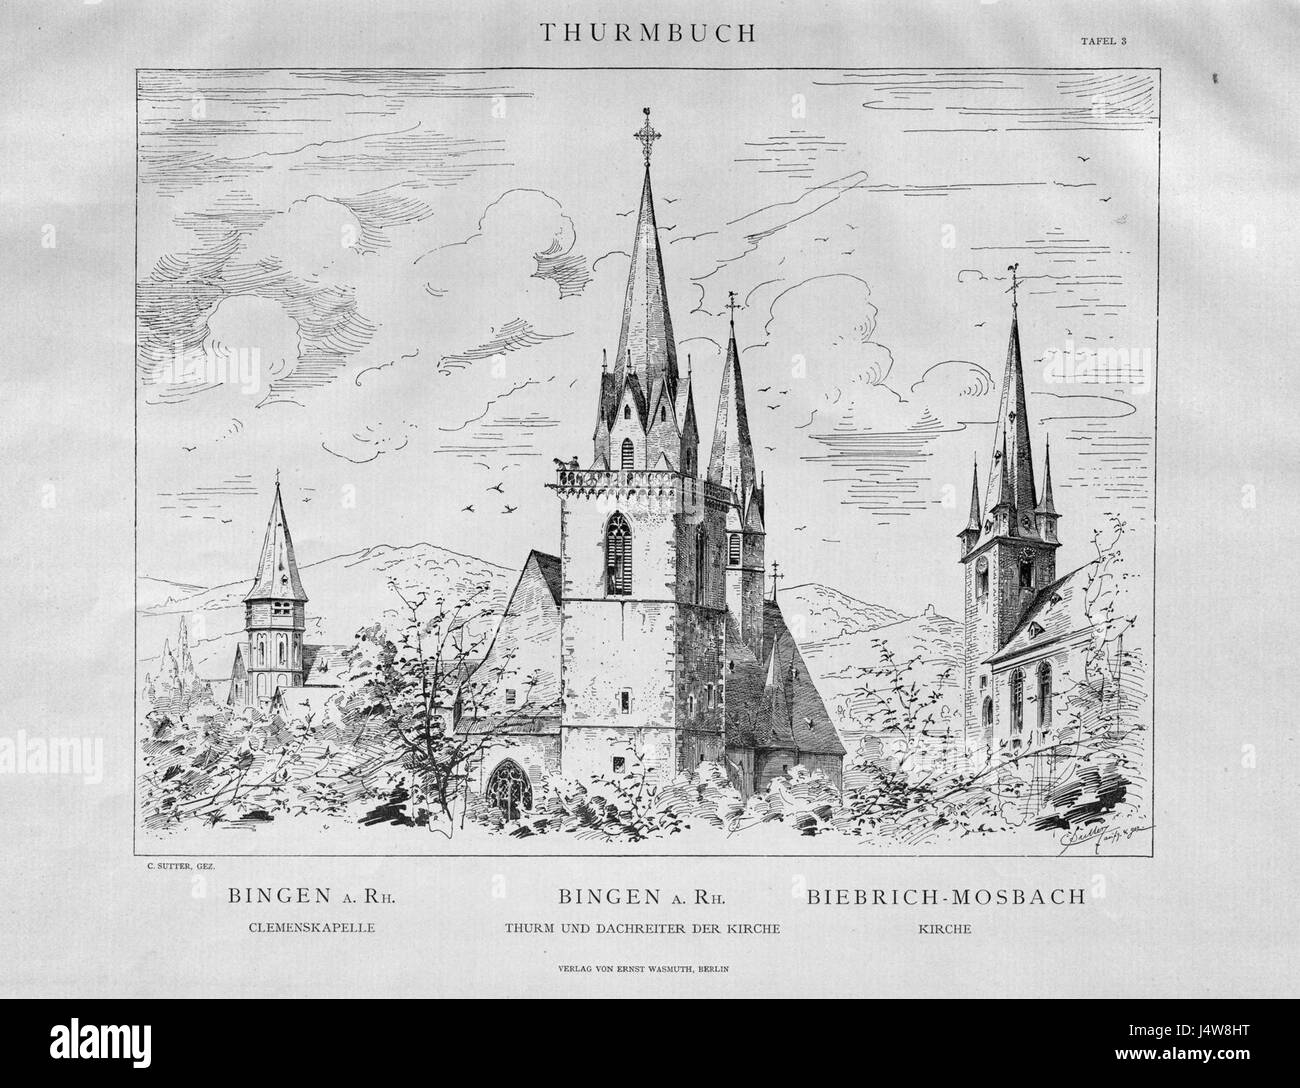 Thurmbuch Tafel 003 Bingen bin Rhein Biebrich-Mosbach Stockfoto